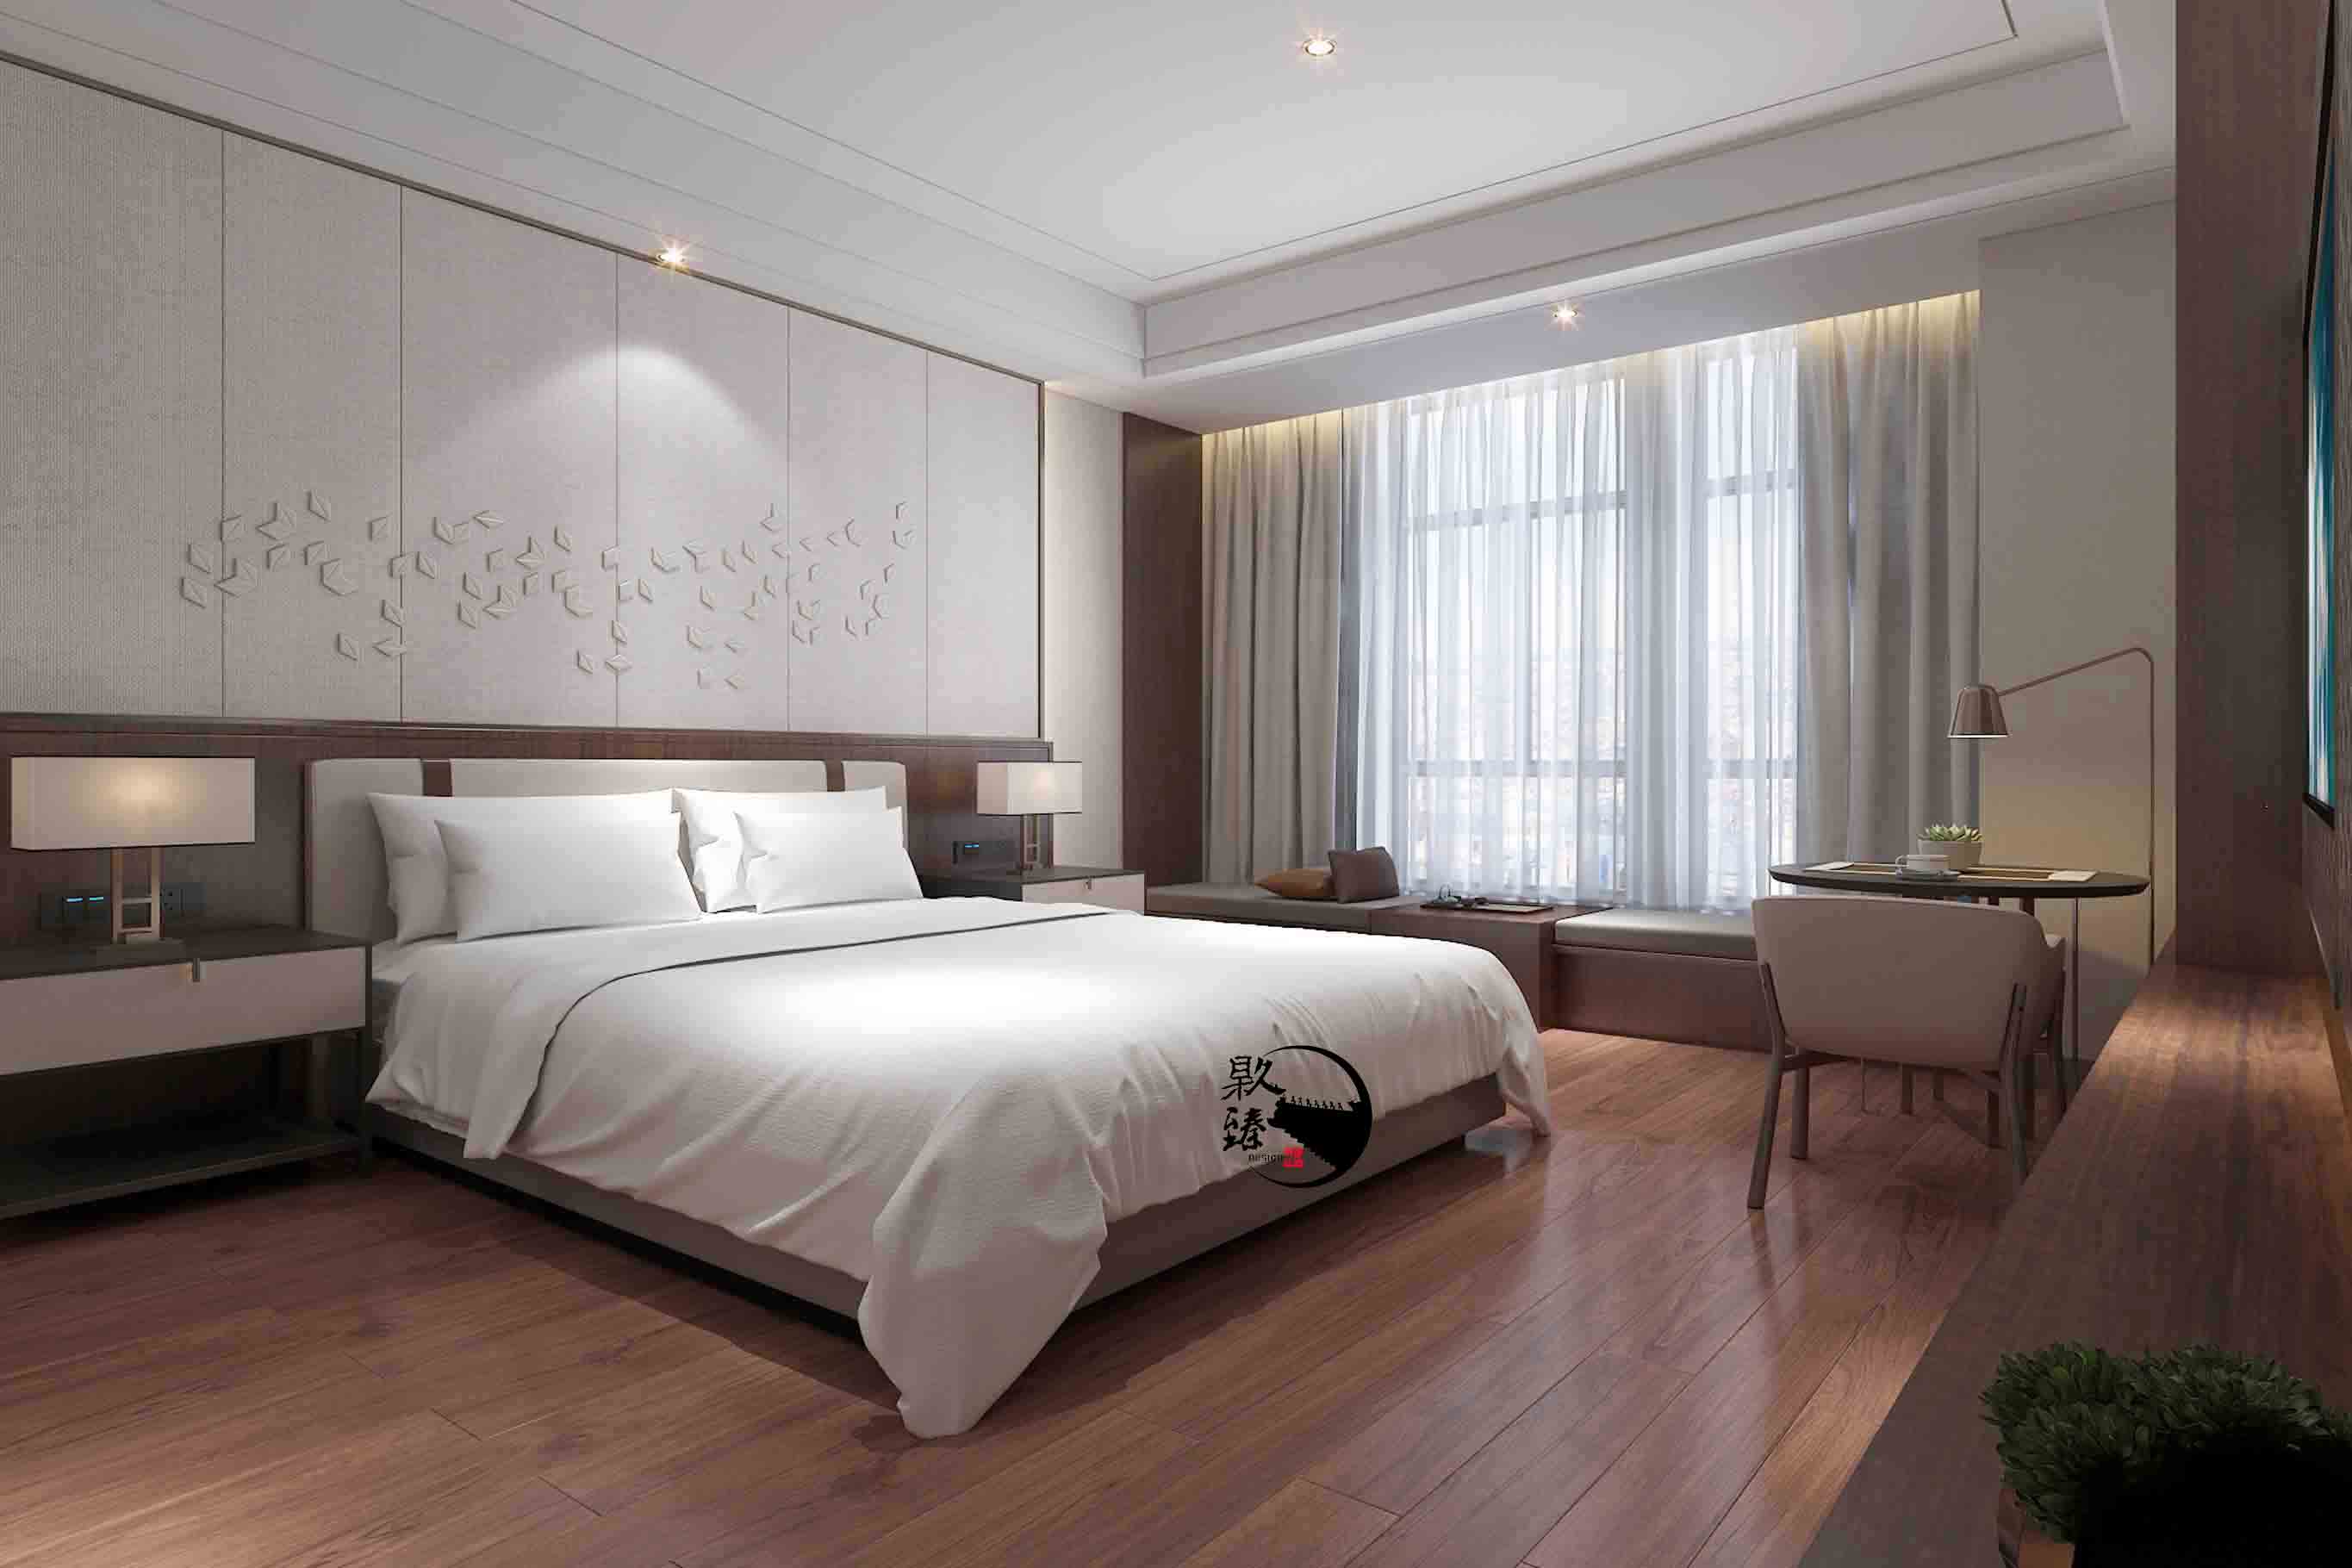 大武口米素酒店设计|满足客户对舒适和安静的需求